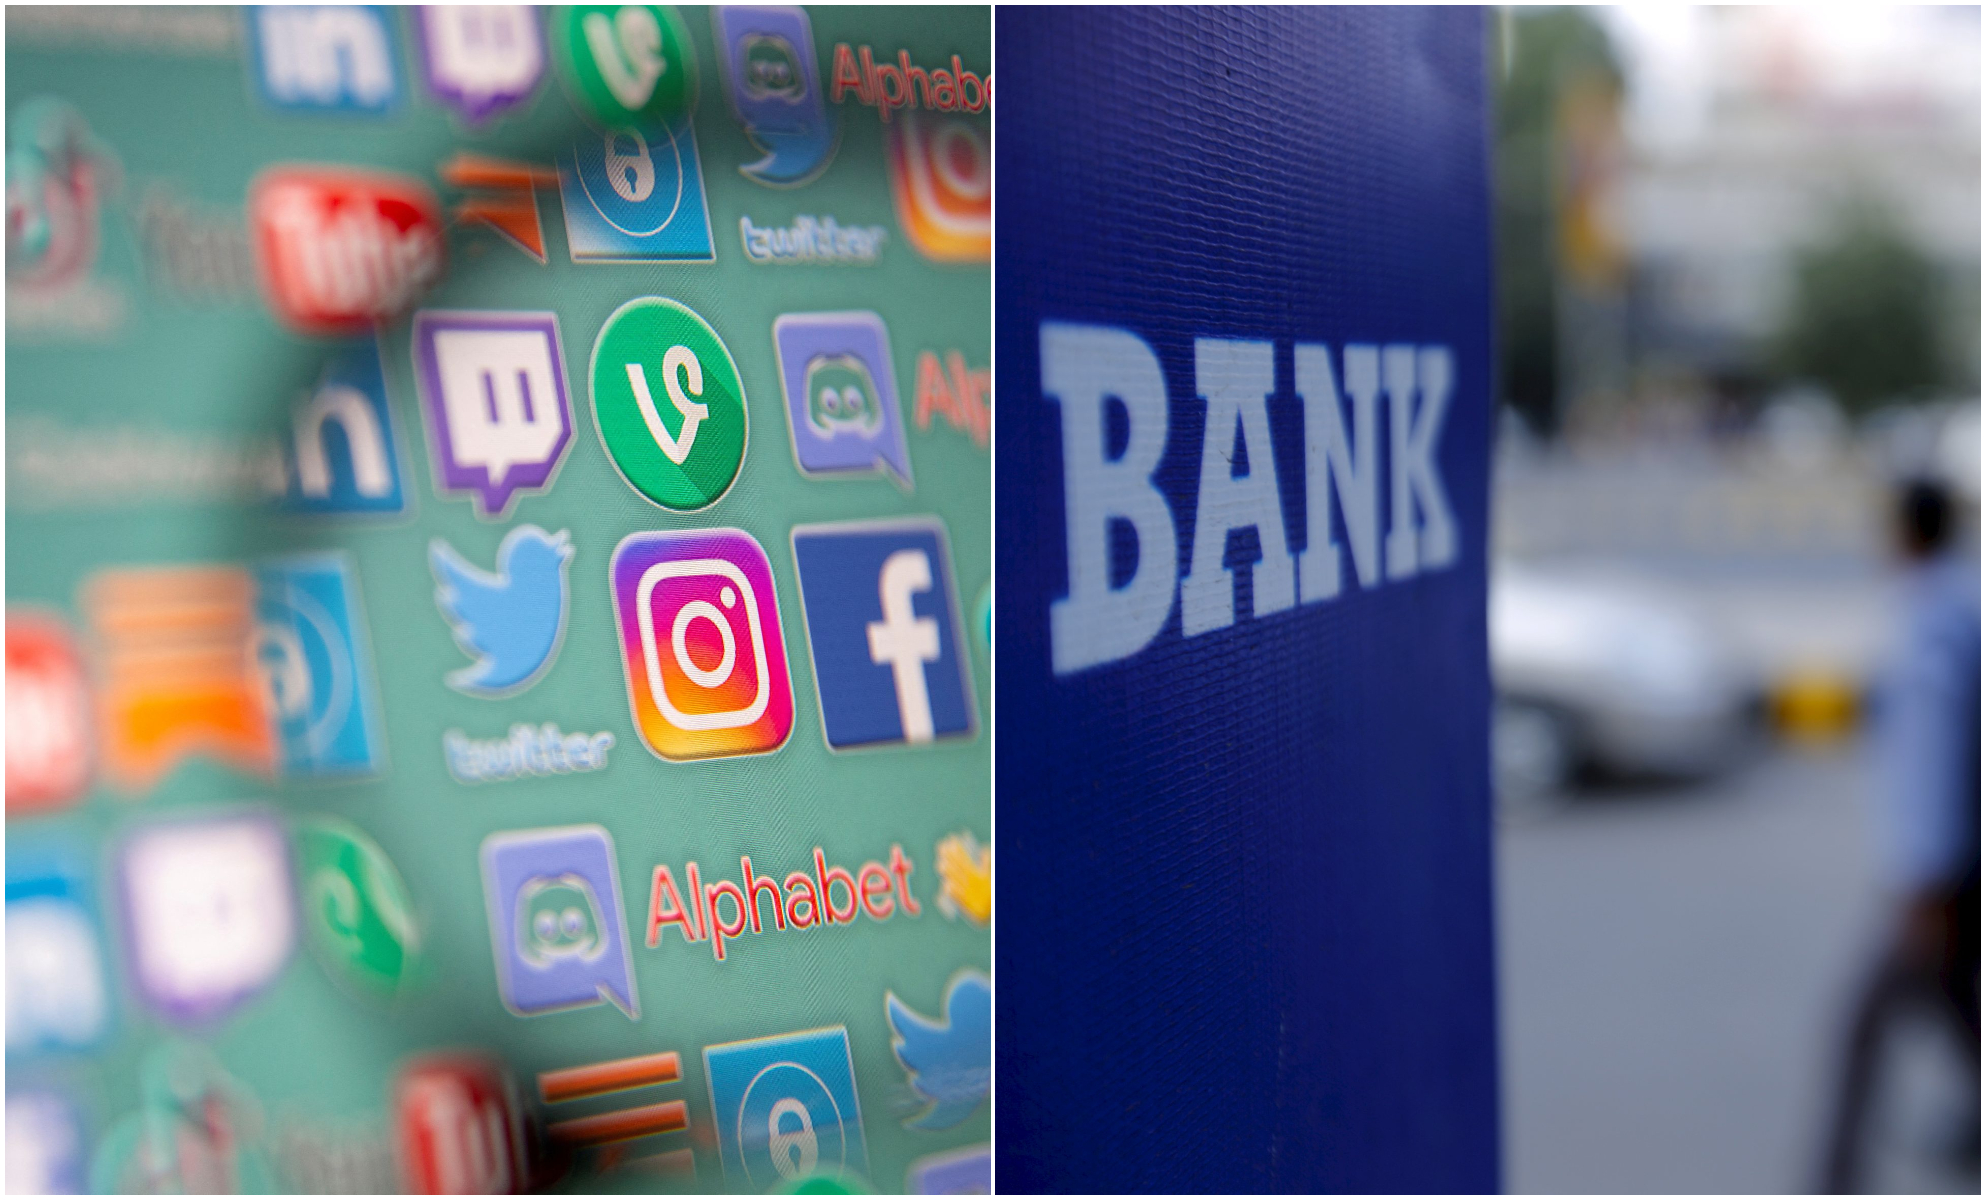 Ψηφιακός μετασχηματισμός: Πρώτοι στα social media, ουραγοί στις τραπεζικές συναλλαγές